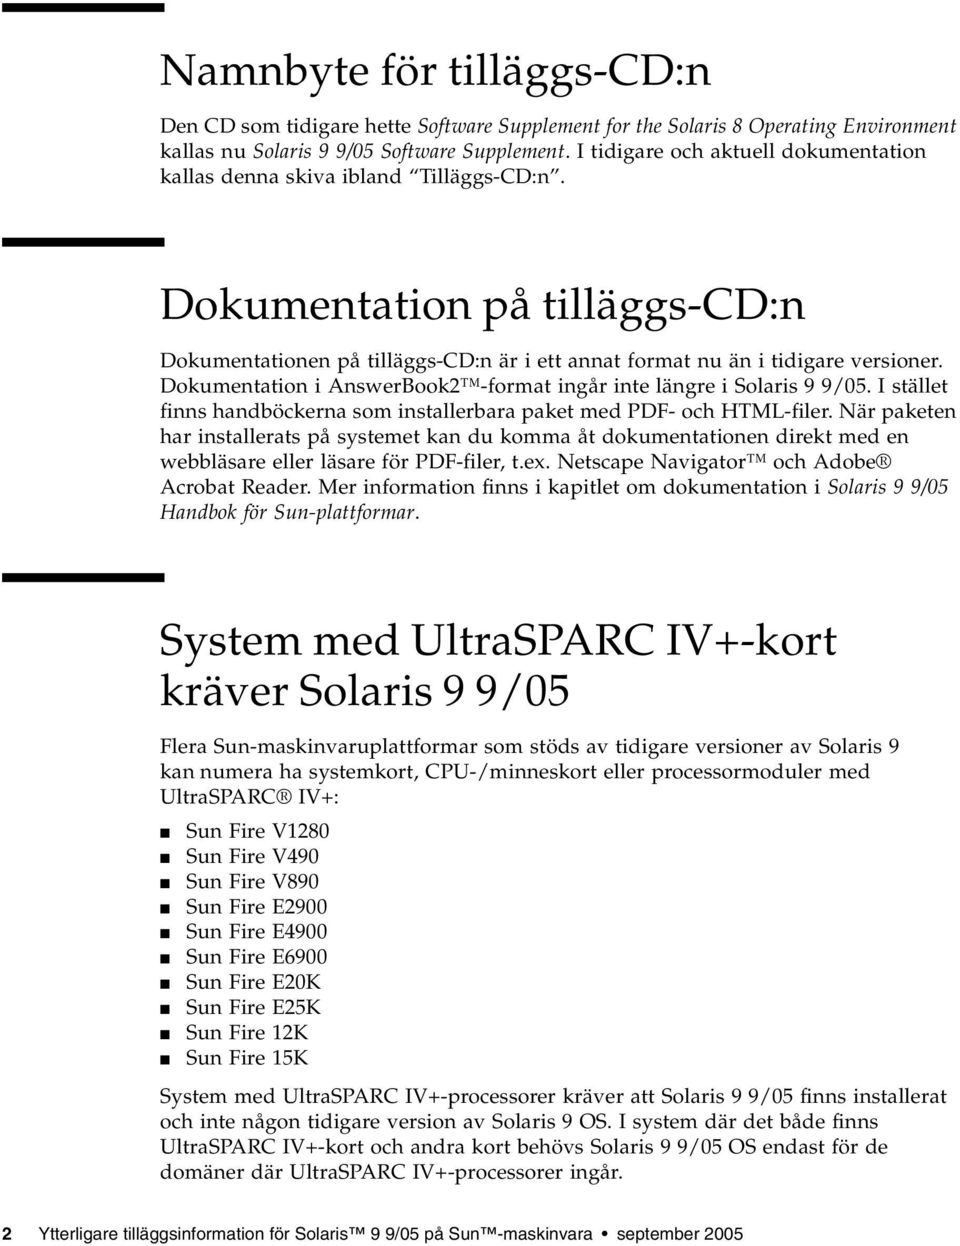 Dokumentation i AnswerBook2 -format ingår inte längre i Solaris 9 9/05. I stället finns handböckerna som installerbara paket med PDF- och HTML-filer.